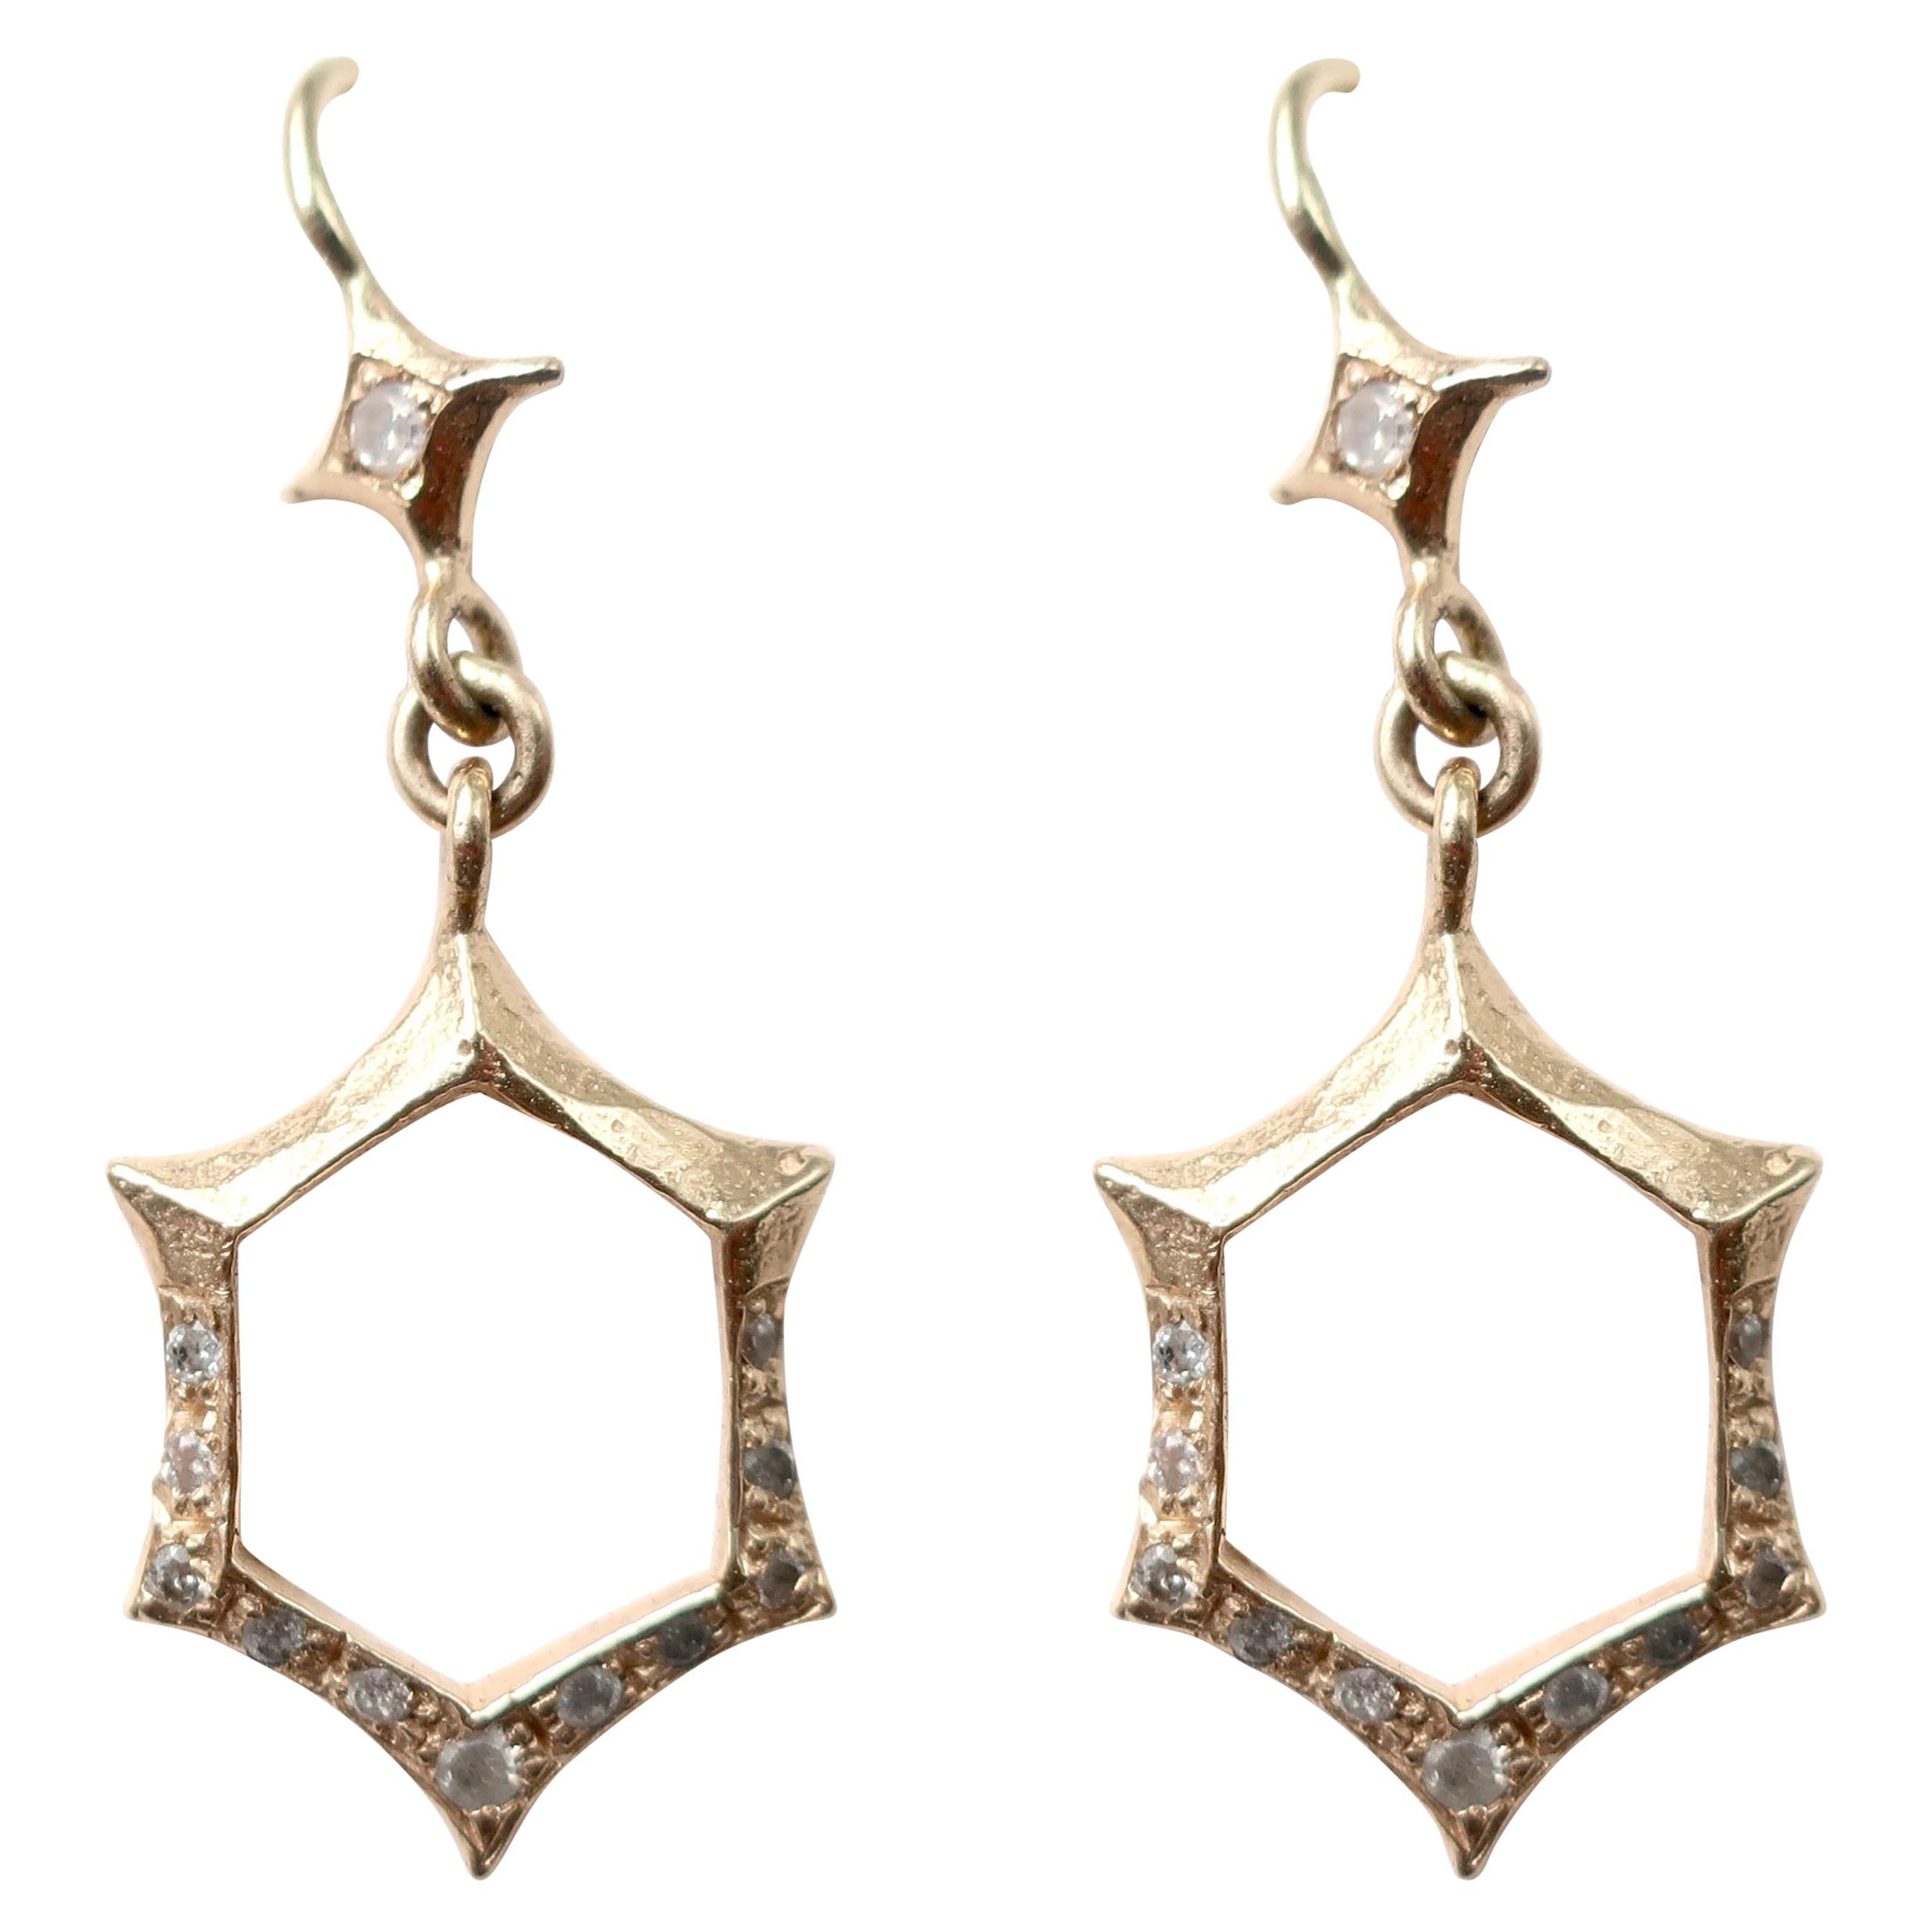 Art Deco Inspired Hexagon Earrings in 14 Karat Gold with Diamonds